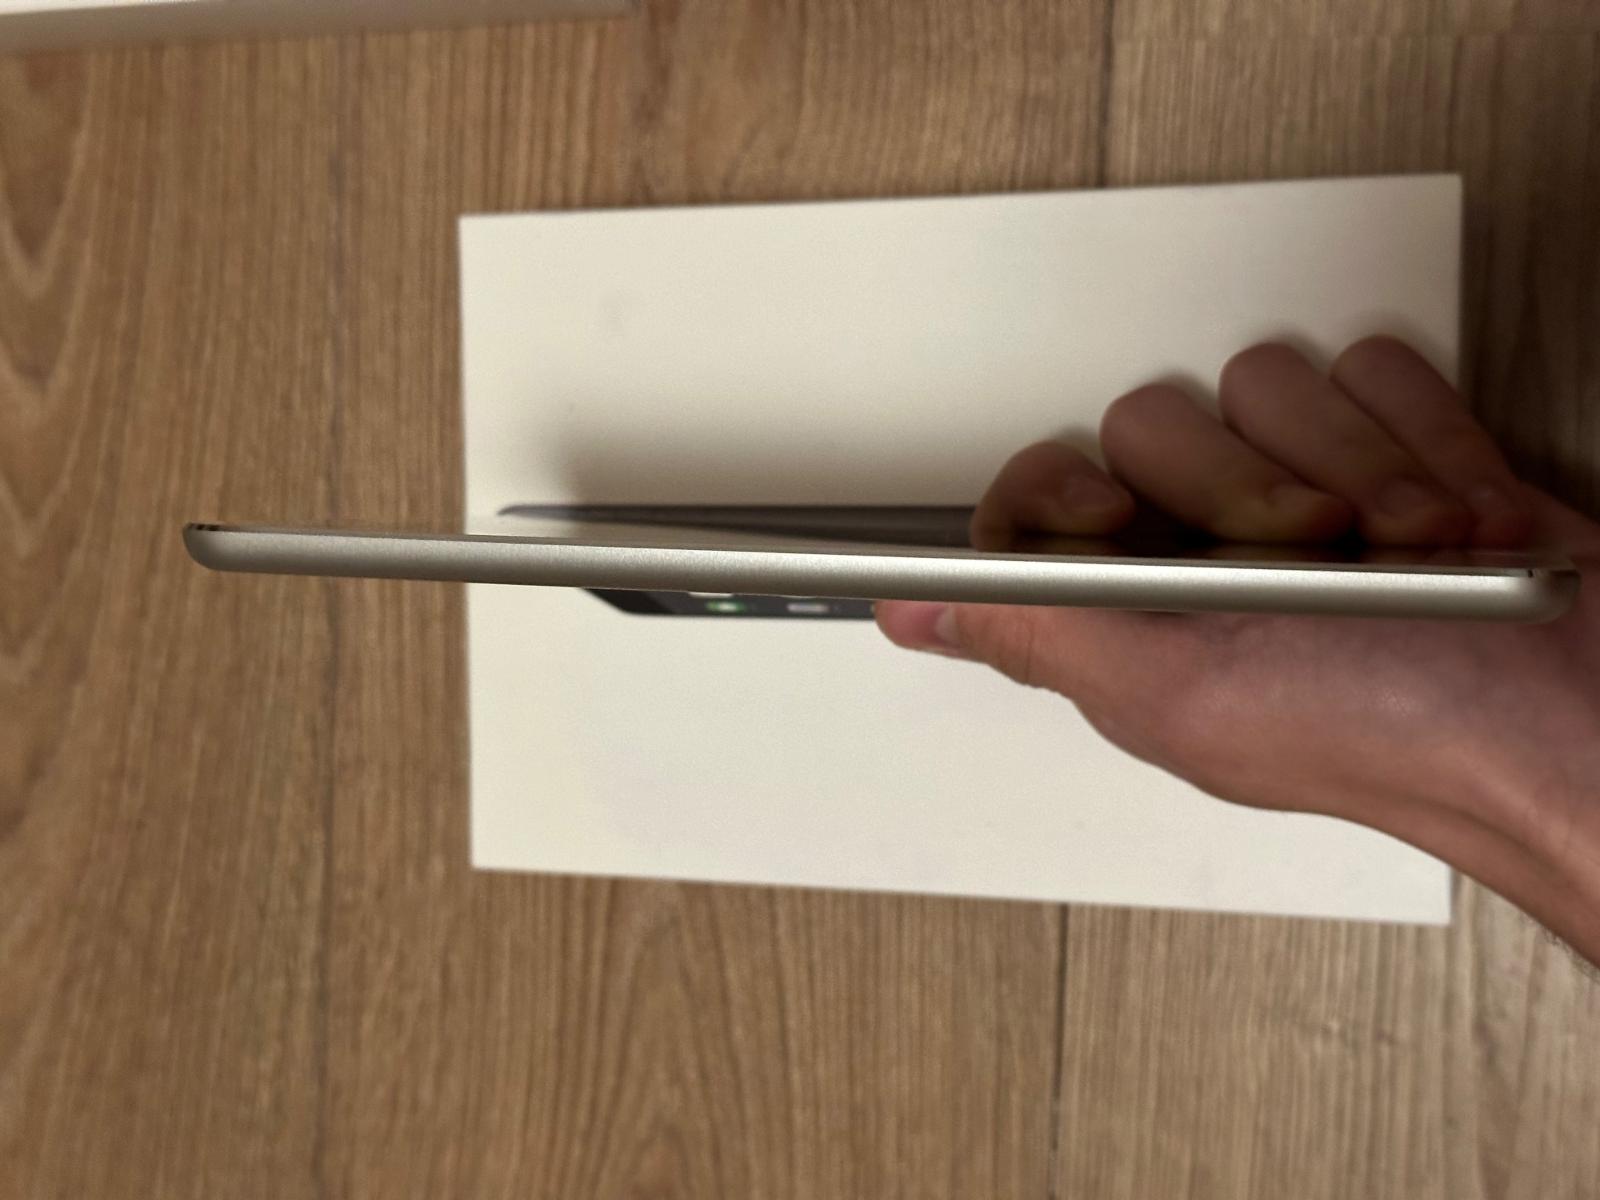 Apple iPad Mini 2 Wi-Fi 16GB bílý Model A1432 Jako nový - Počítače a hry